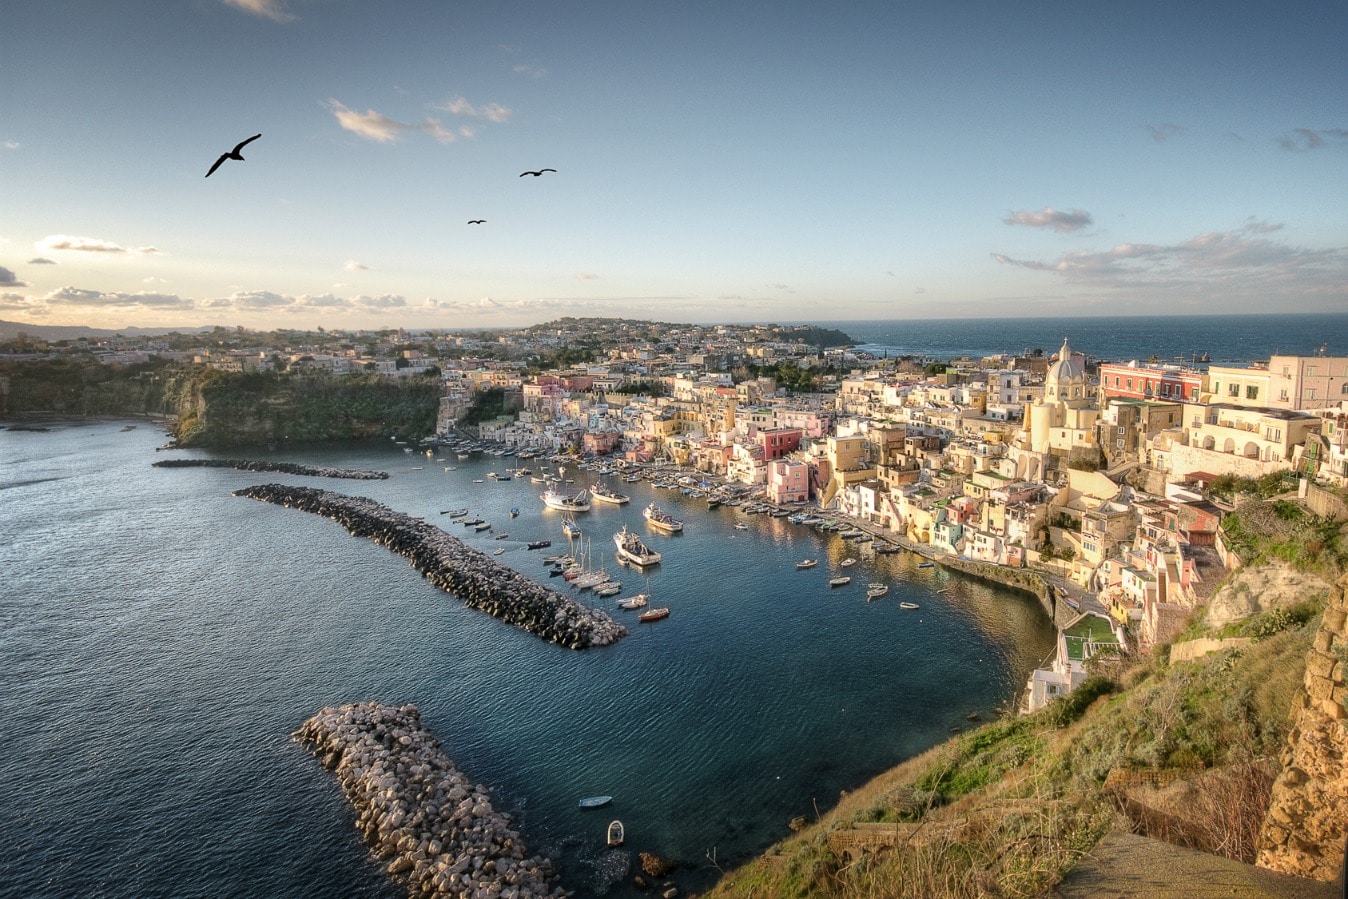 Lire la suite à propos de l’article La Dolce Vita à Ischia, Procida et Capri…